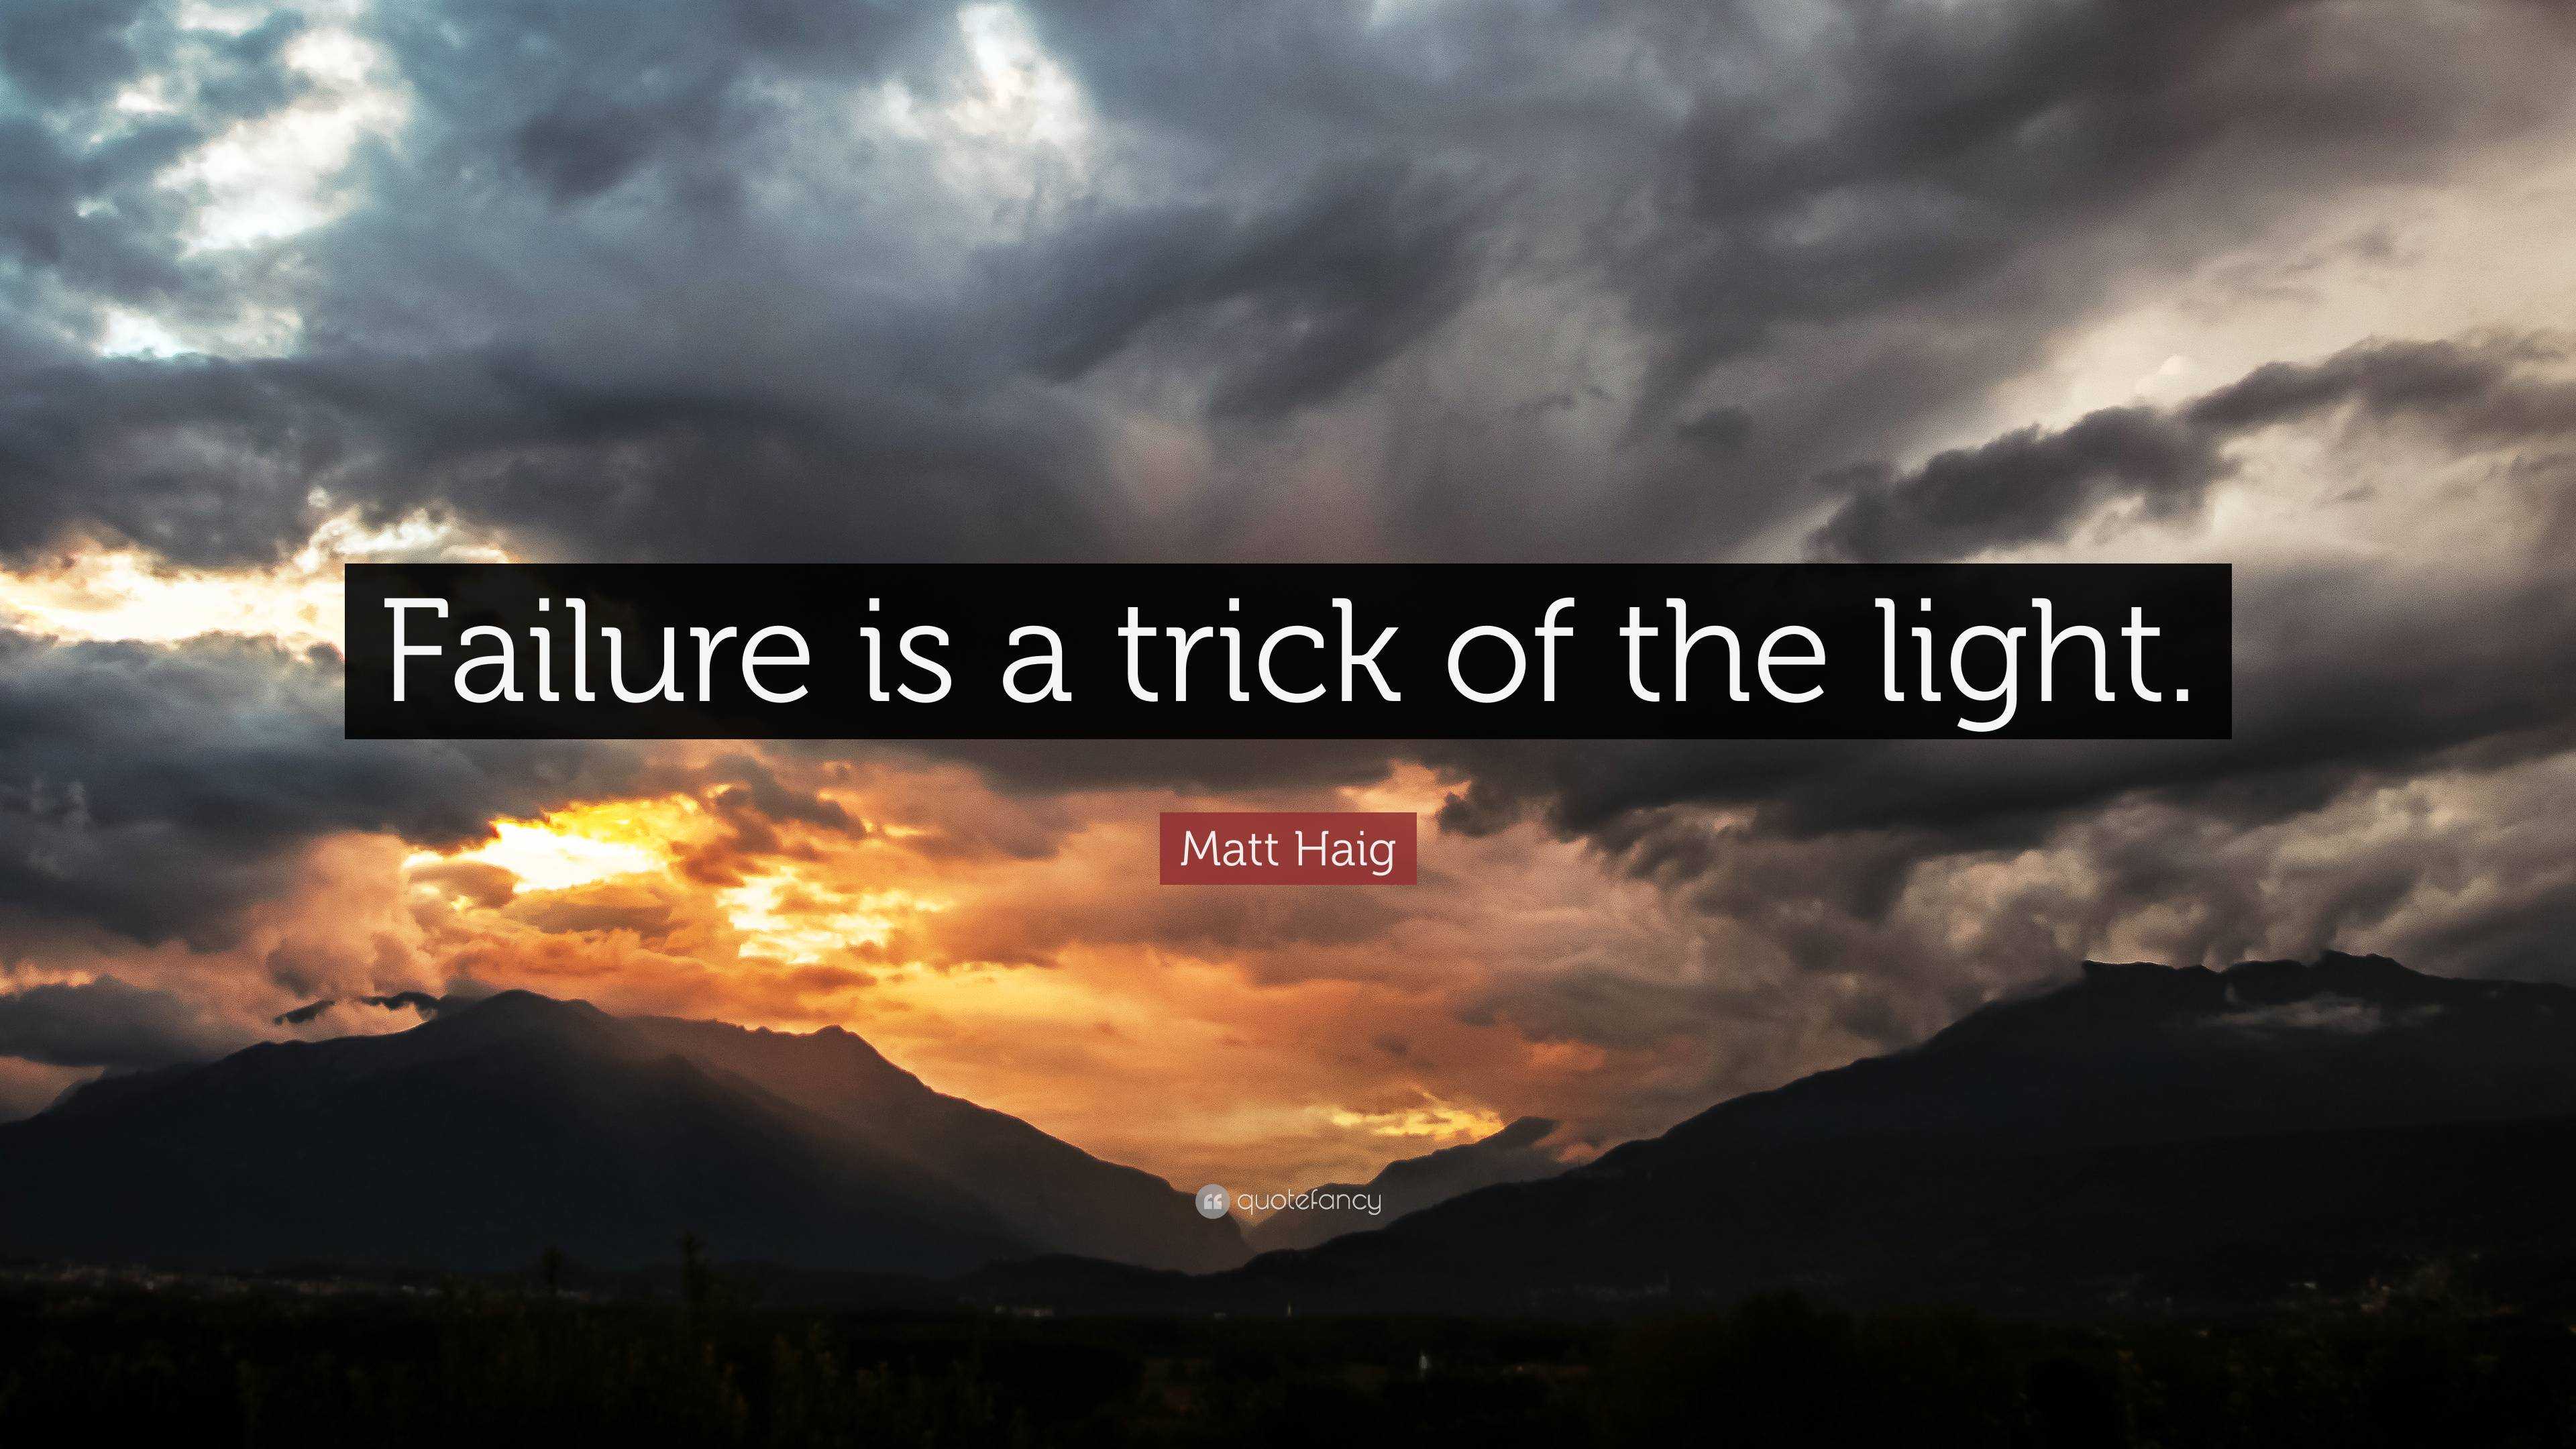 Matt Haig Quote: “Failure is a of the light.”